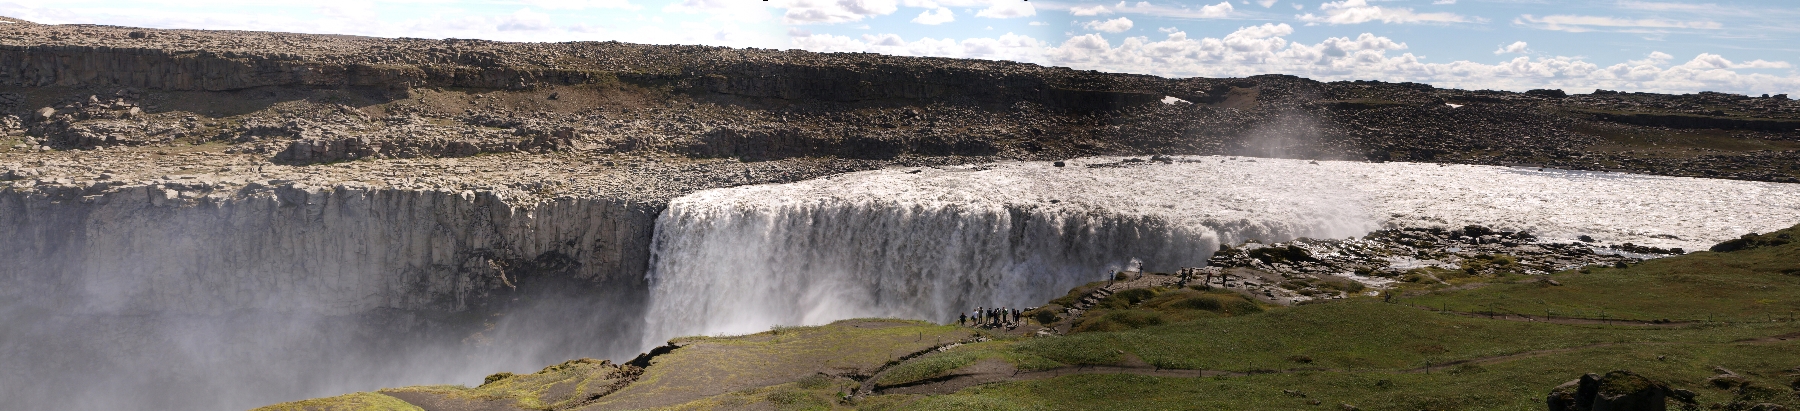 Dettifoss - Europa's größter Wasserfall